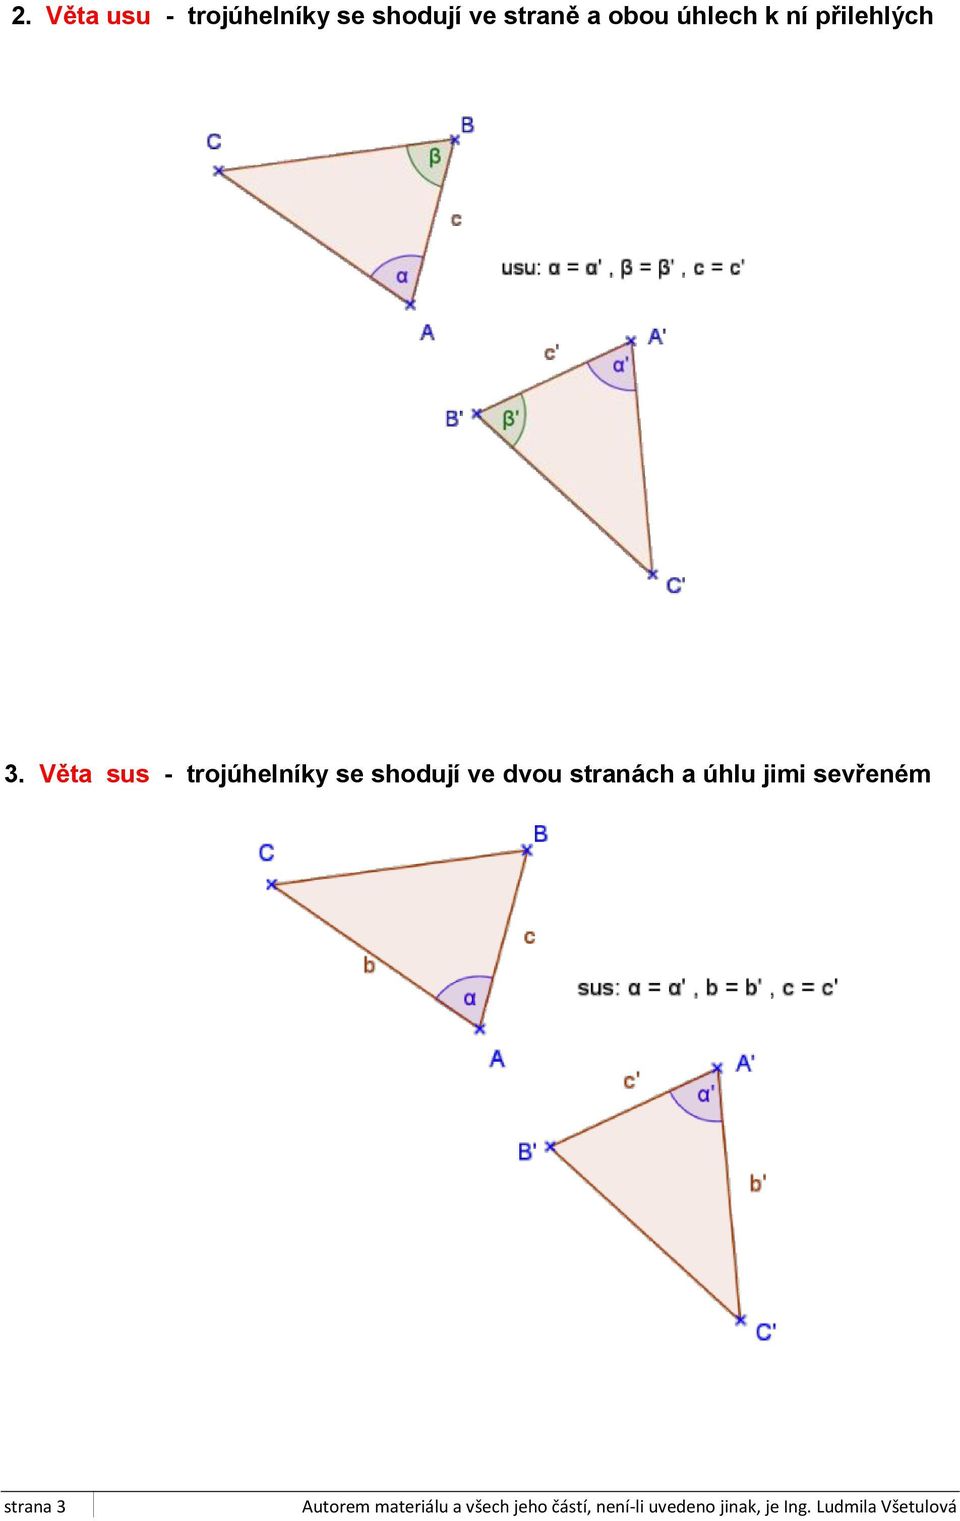 Věta sus - trojúhelníky se shodují ve